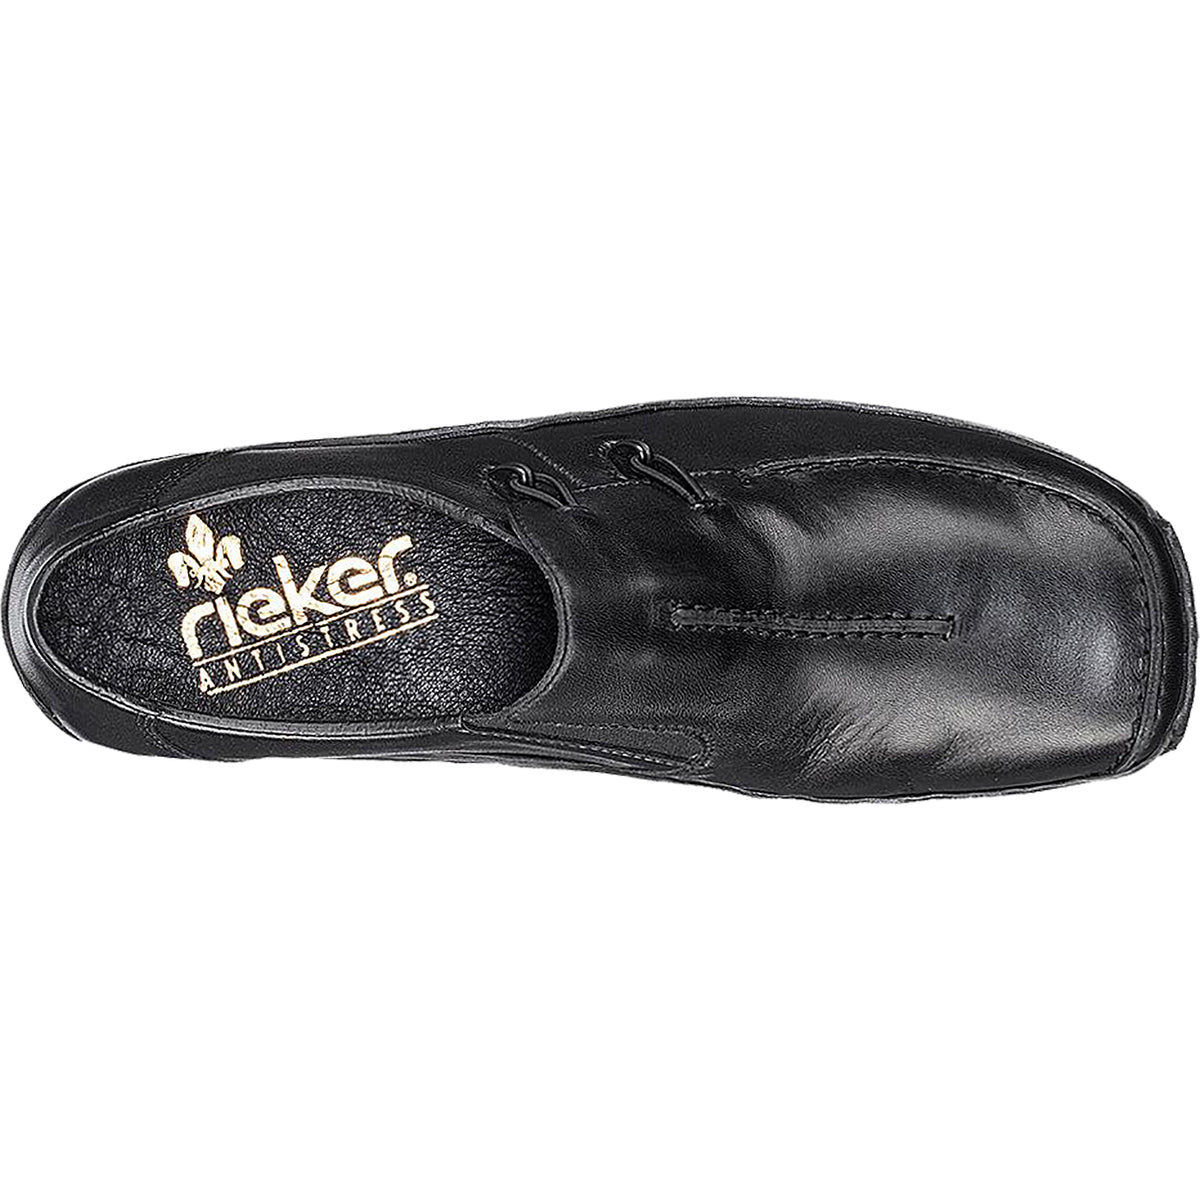 Rieker L1751-00 Celia 51 | Women's Slip-On Shoes | Footwear etc.